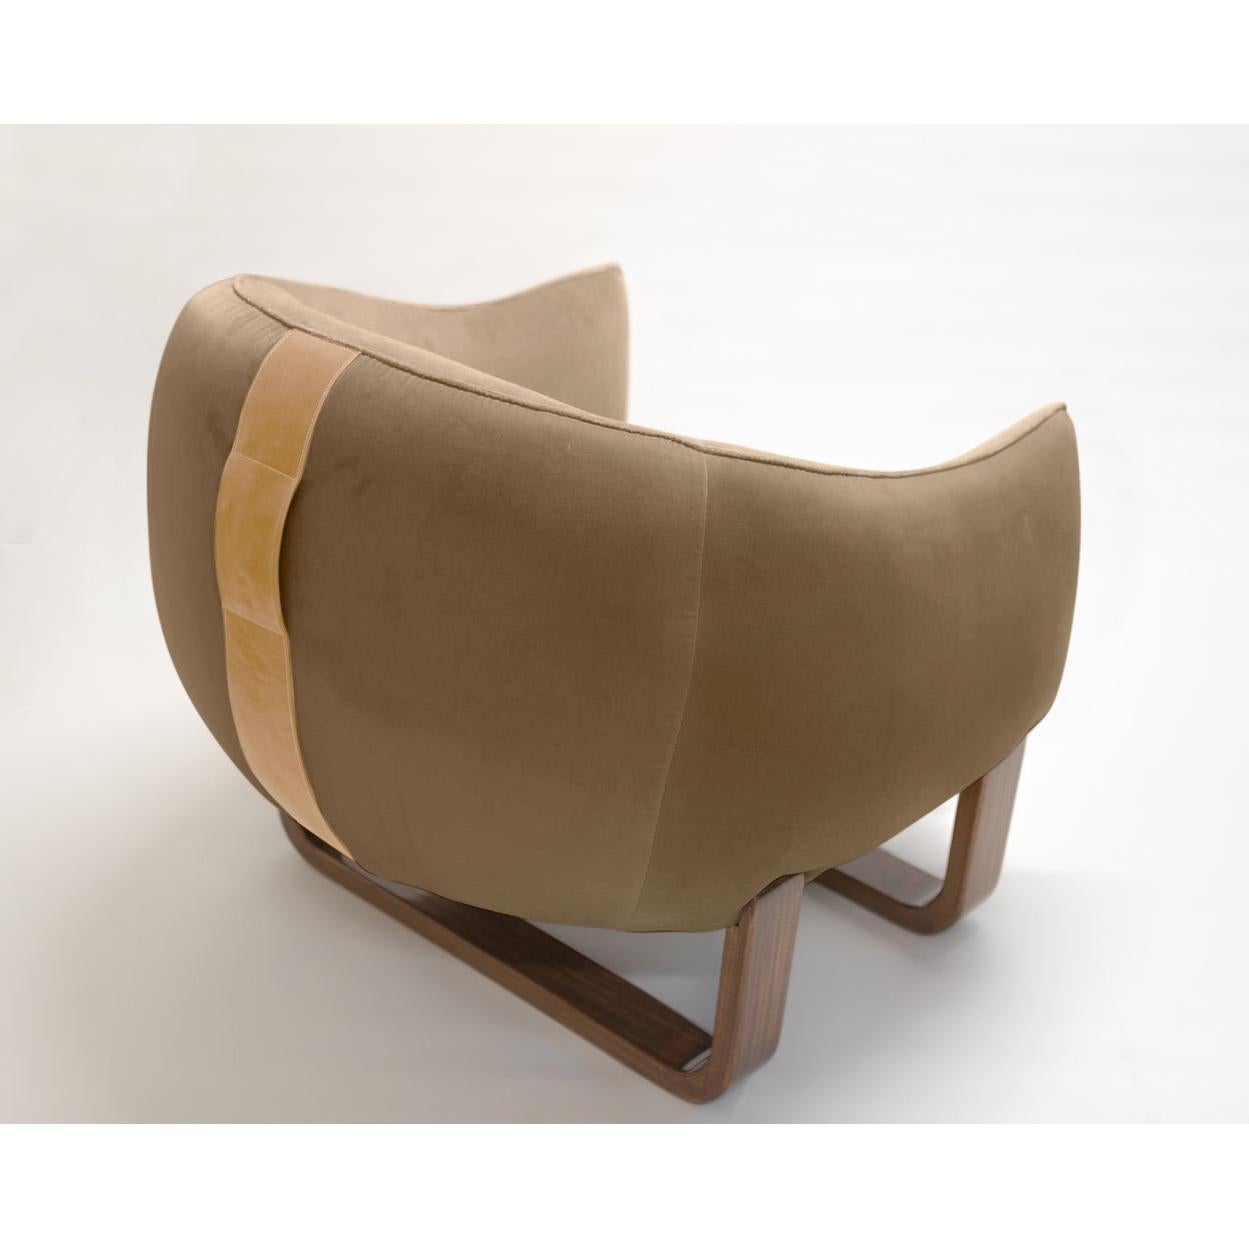 Der Sessel Milo verfügt über zwei Bugholzfüße und -beine in luxuriöser Lackierung, während der Milo Bean mit Ledergriffen ausgestattet ist, die das Tragen erleichtern. Das farbenfrohe, kurvenreiche Duo, das von Marie Burgos entworfen wurde, kann